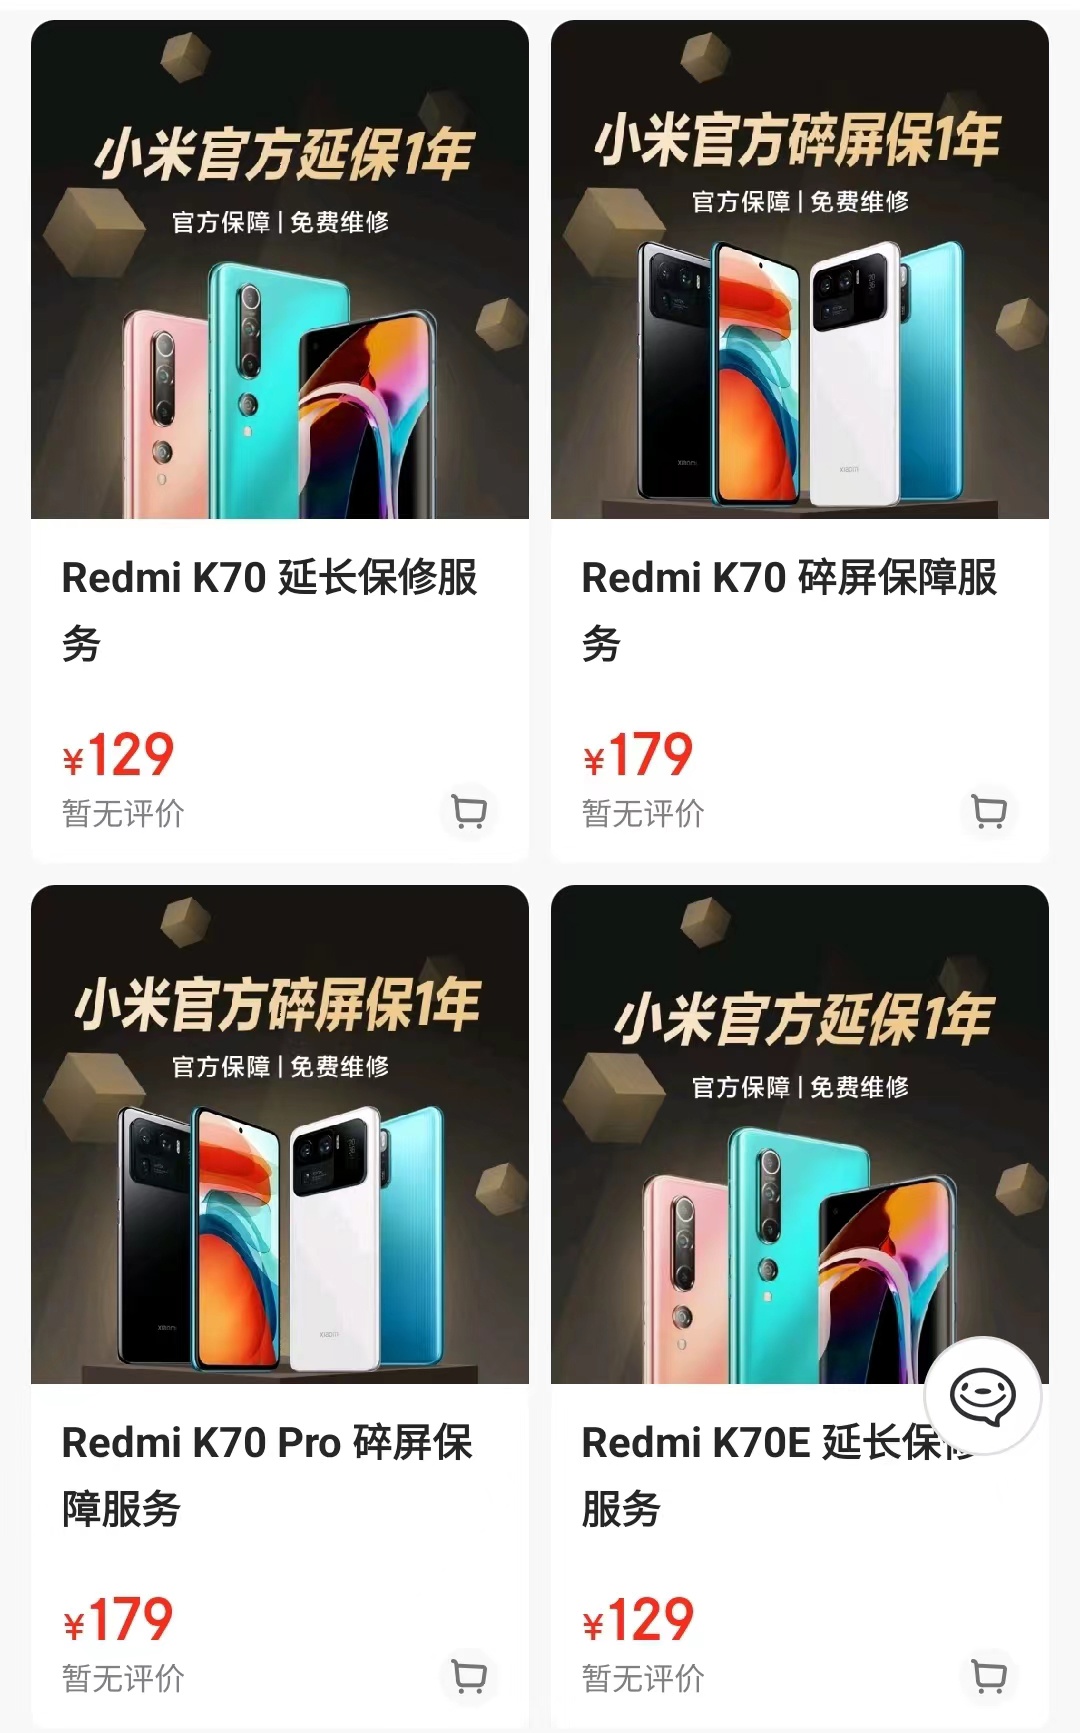 Redmi K70 series